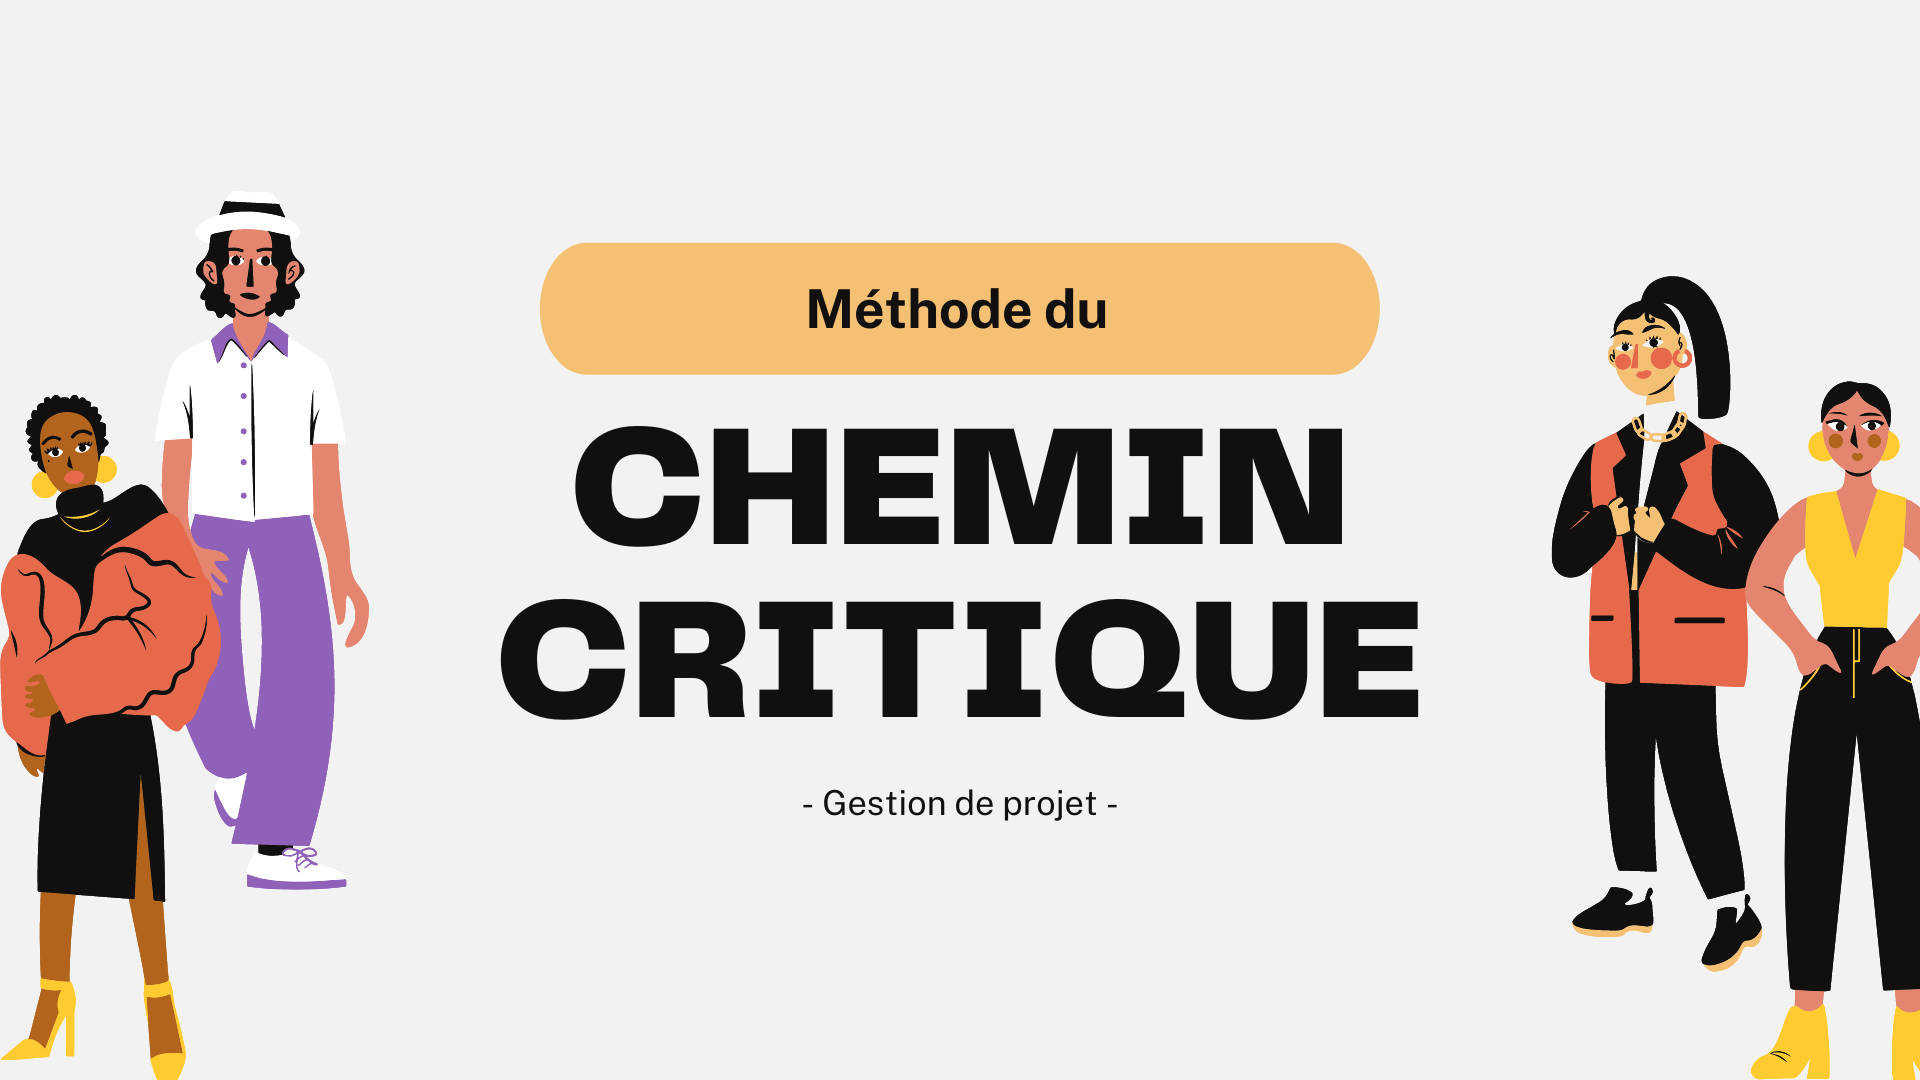 Methode du chemin critique 1